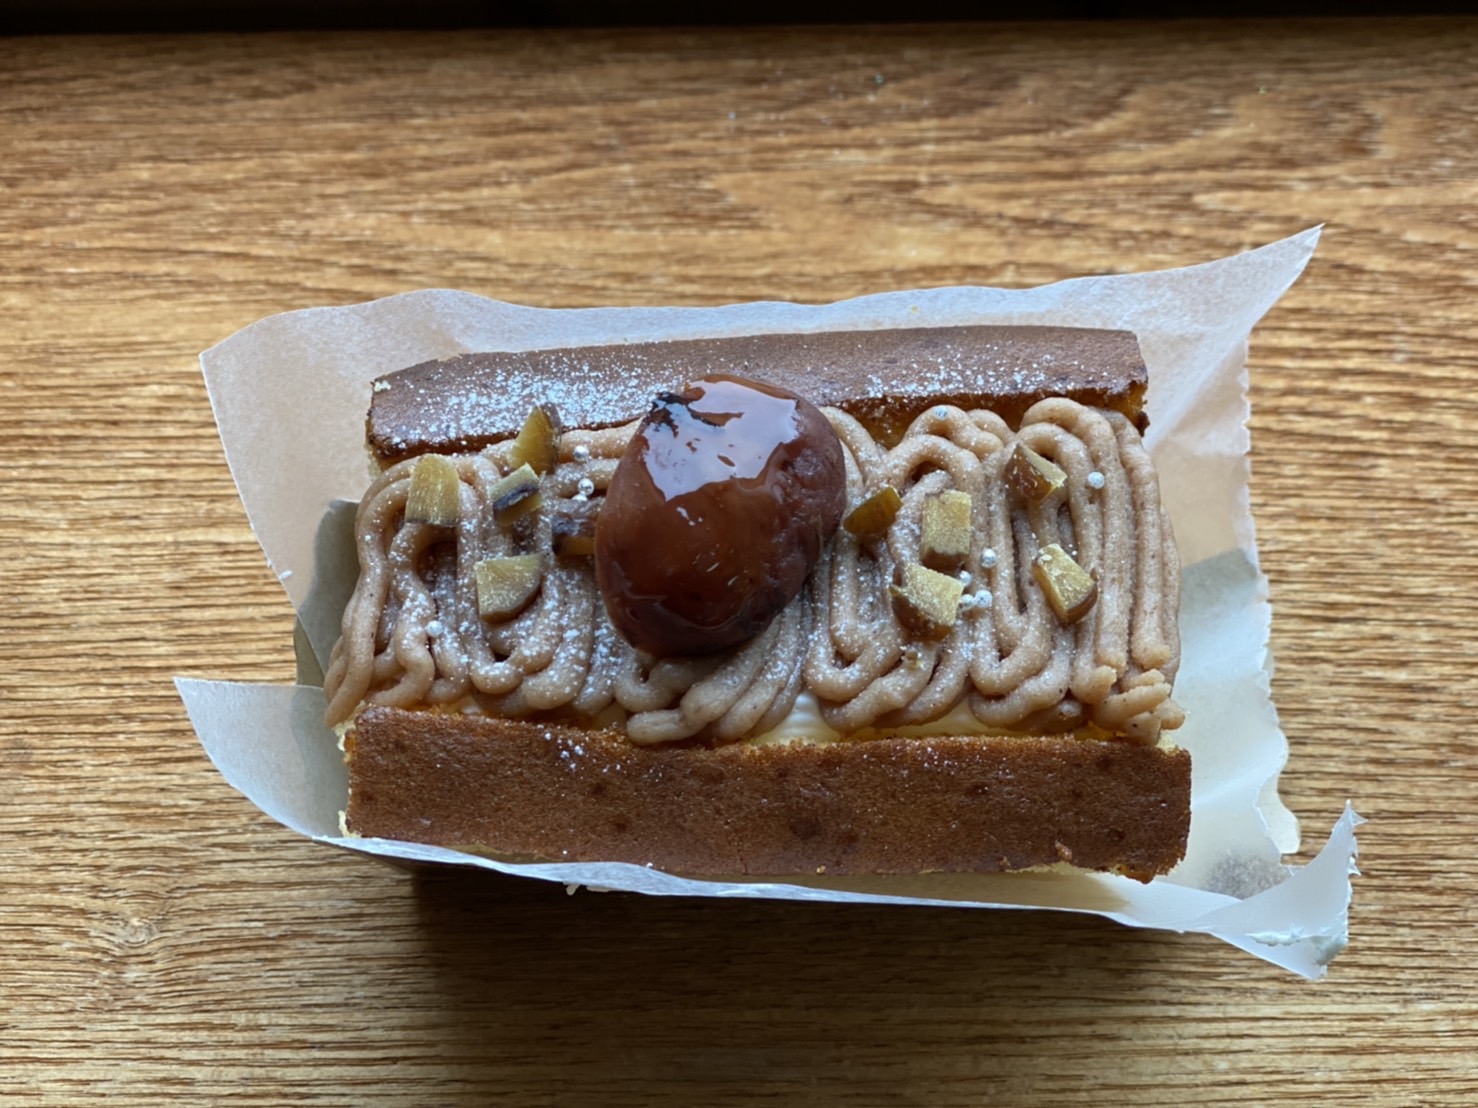 阪場製菓さんの渋皮栗のモンブラン